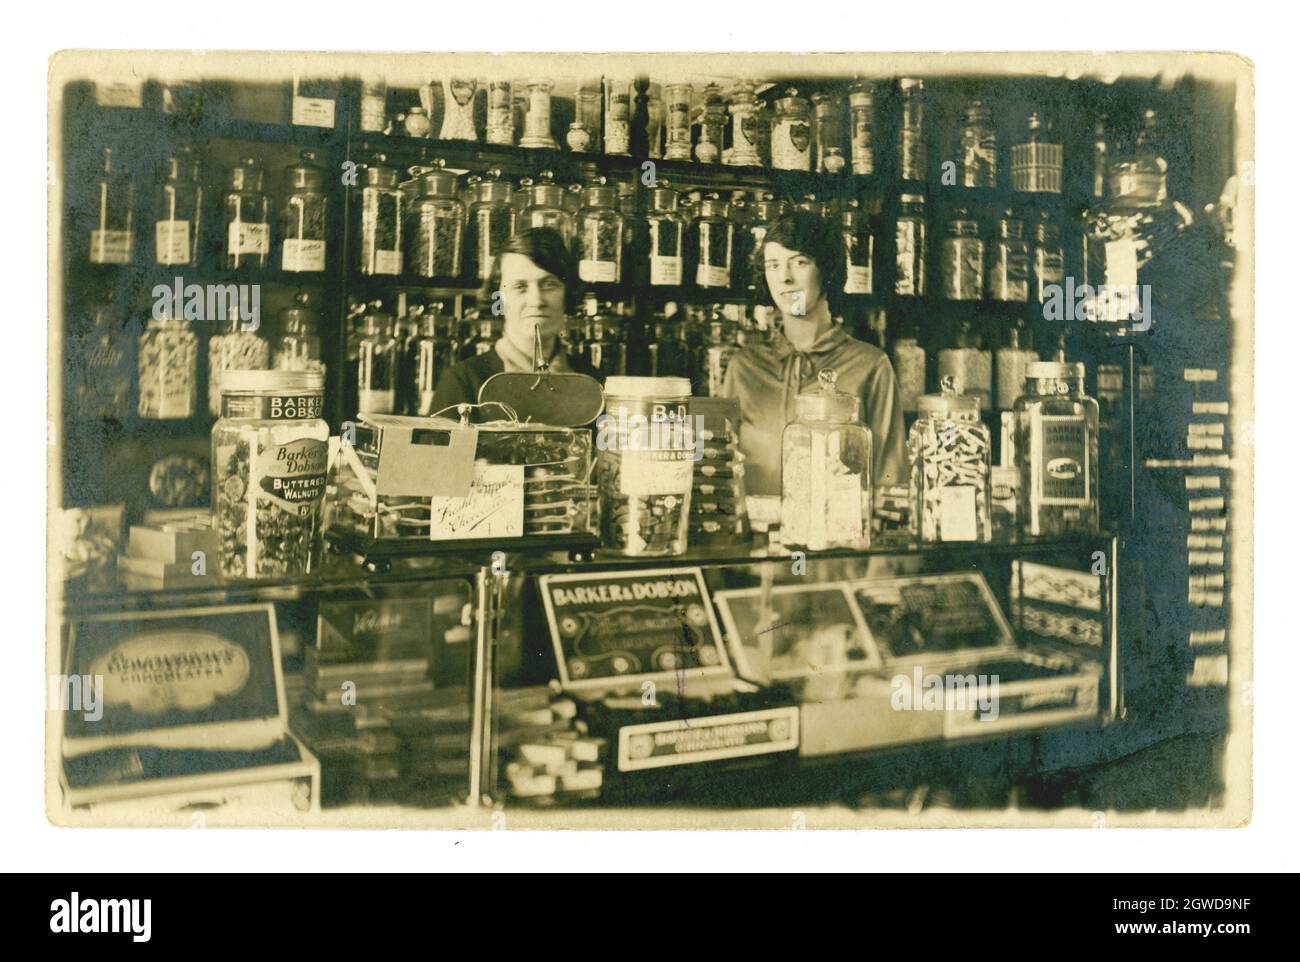 Originale e raro cartolina degli anni '20 di tipico, vecchio stile negozio di dolci interni, con felice donna proprietari o assistenti, in piedi sorridente dietro il banco, il famoso Barker e Dobson confetteria marchio su vasi di vetro. Di W Williams, Caernarvon, Galles, Regno Unito circa 1927 Foto Stock